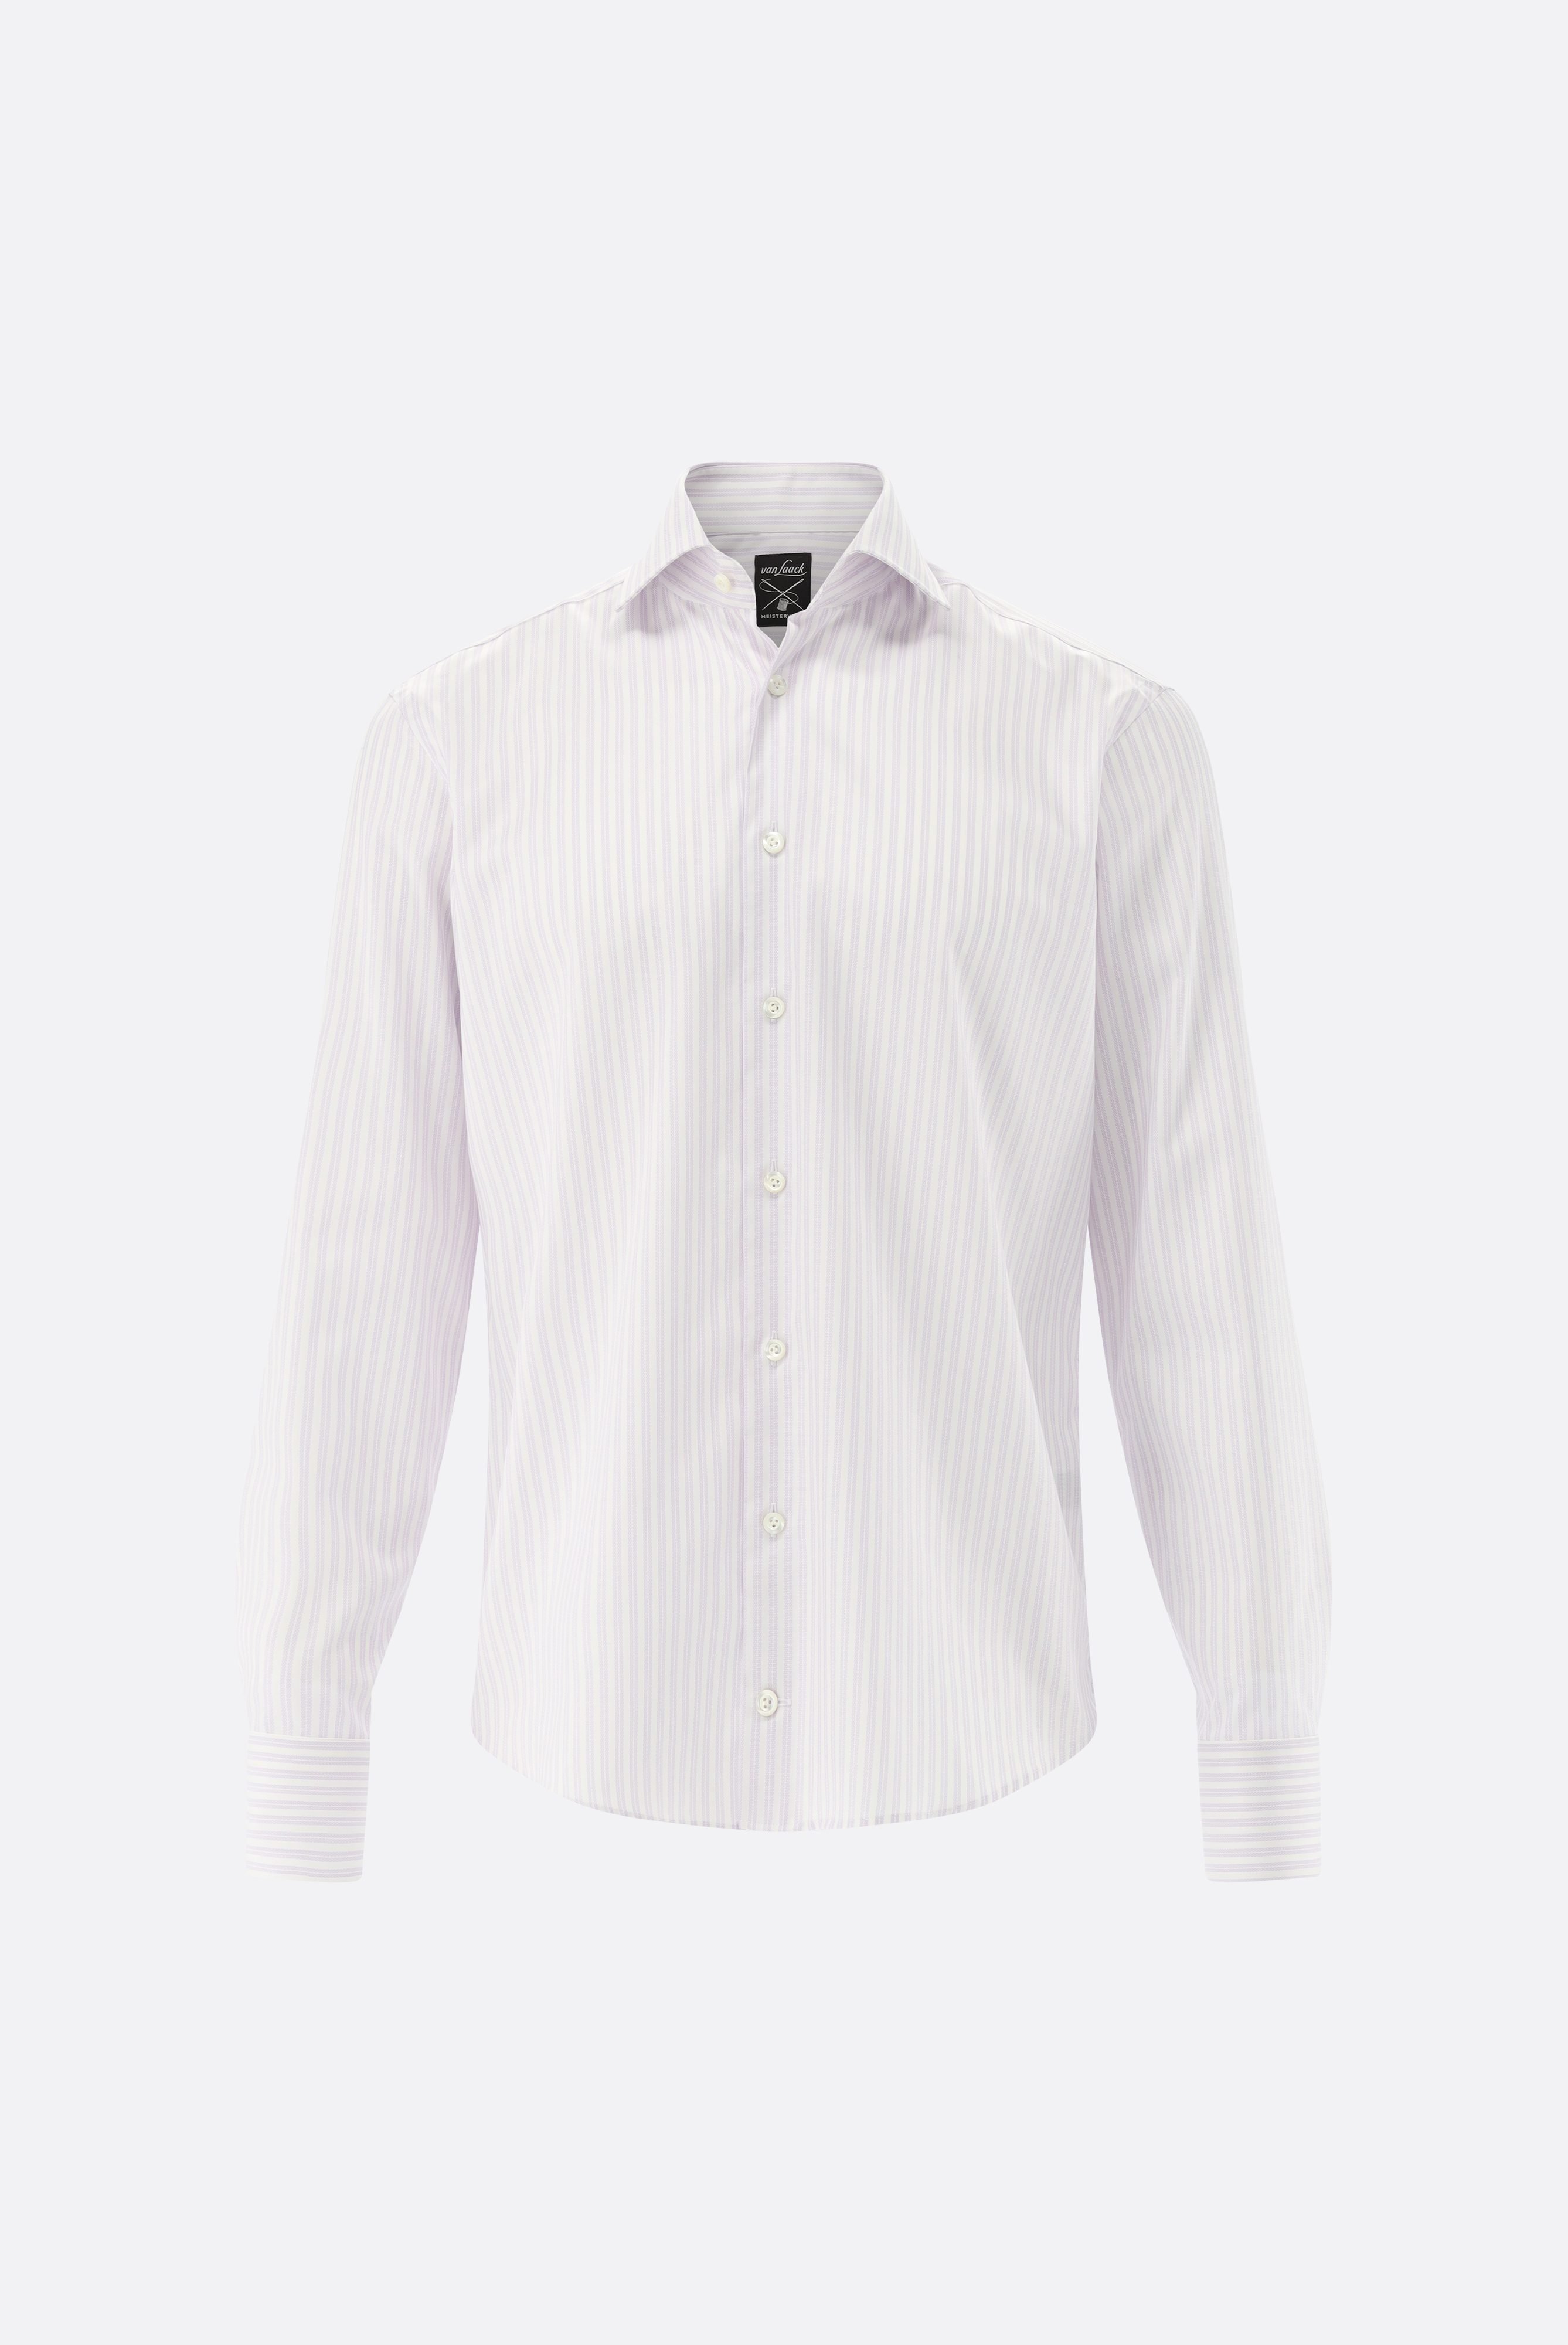 Bügelleichte Hemden+Bügelfreies Hemd mit Streifen Tailor Fit+20.2020.BQ.161106.006.45